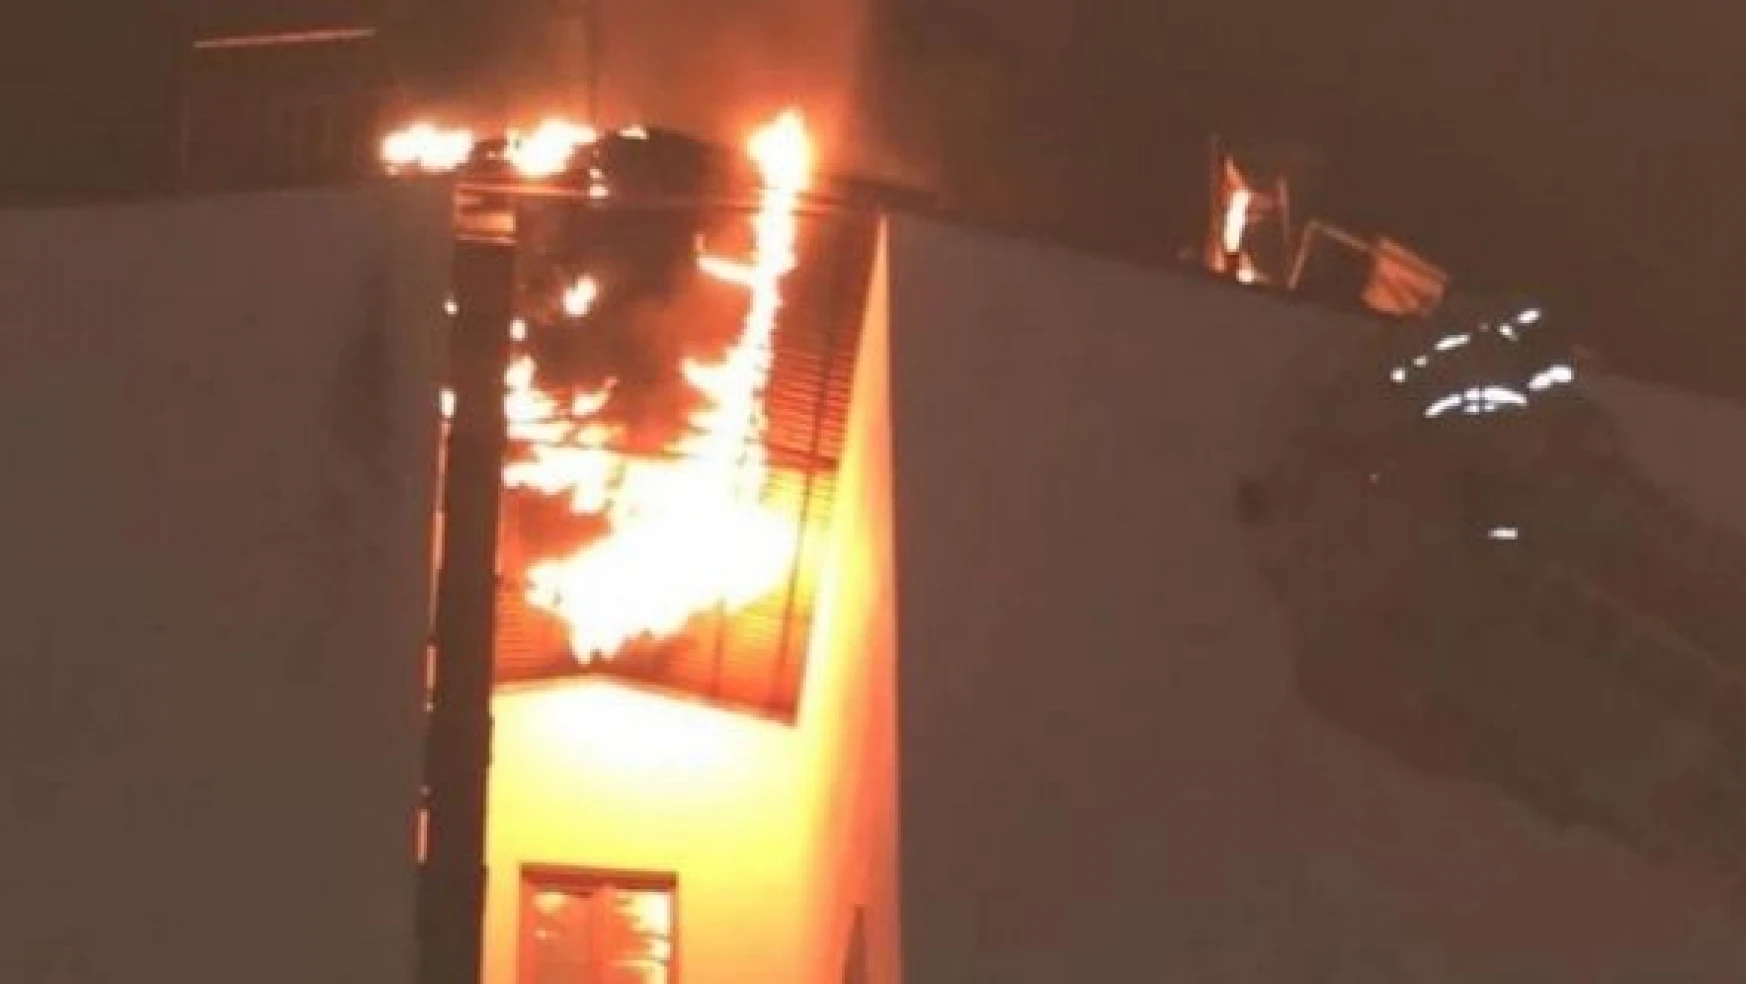 Tunceli'de apartmanın çatısında yangın çıktı!